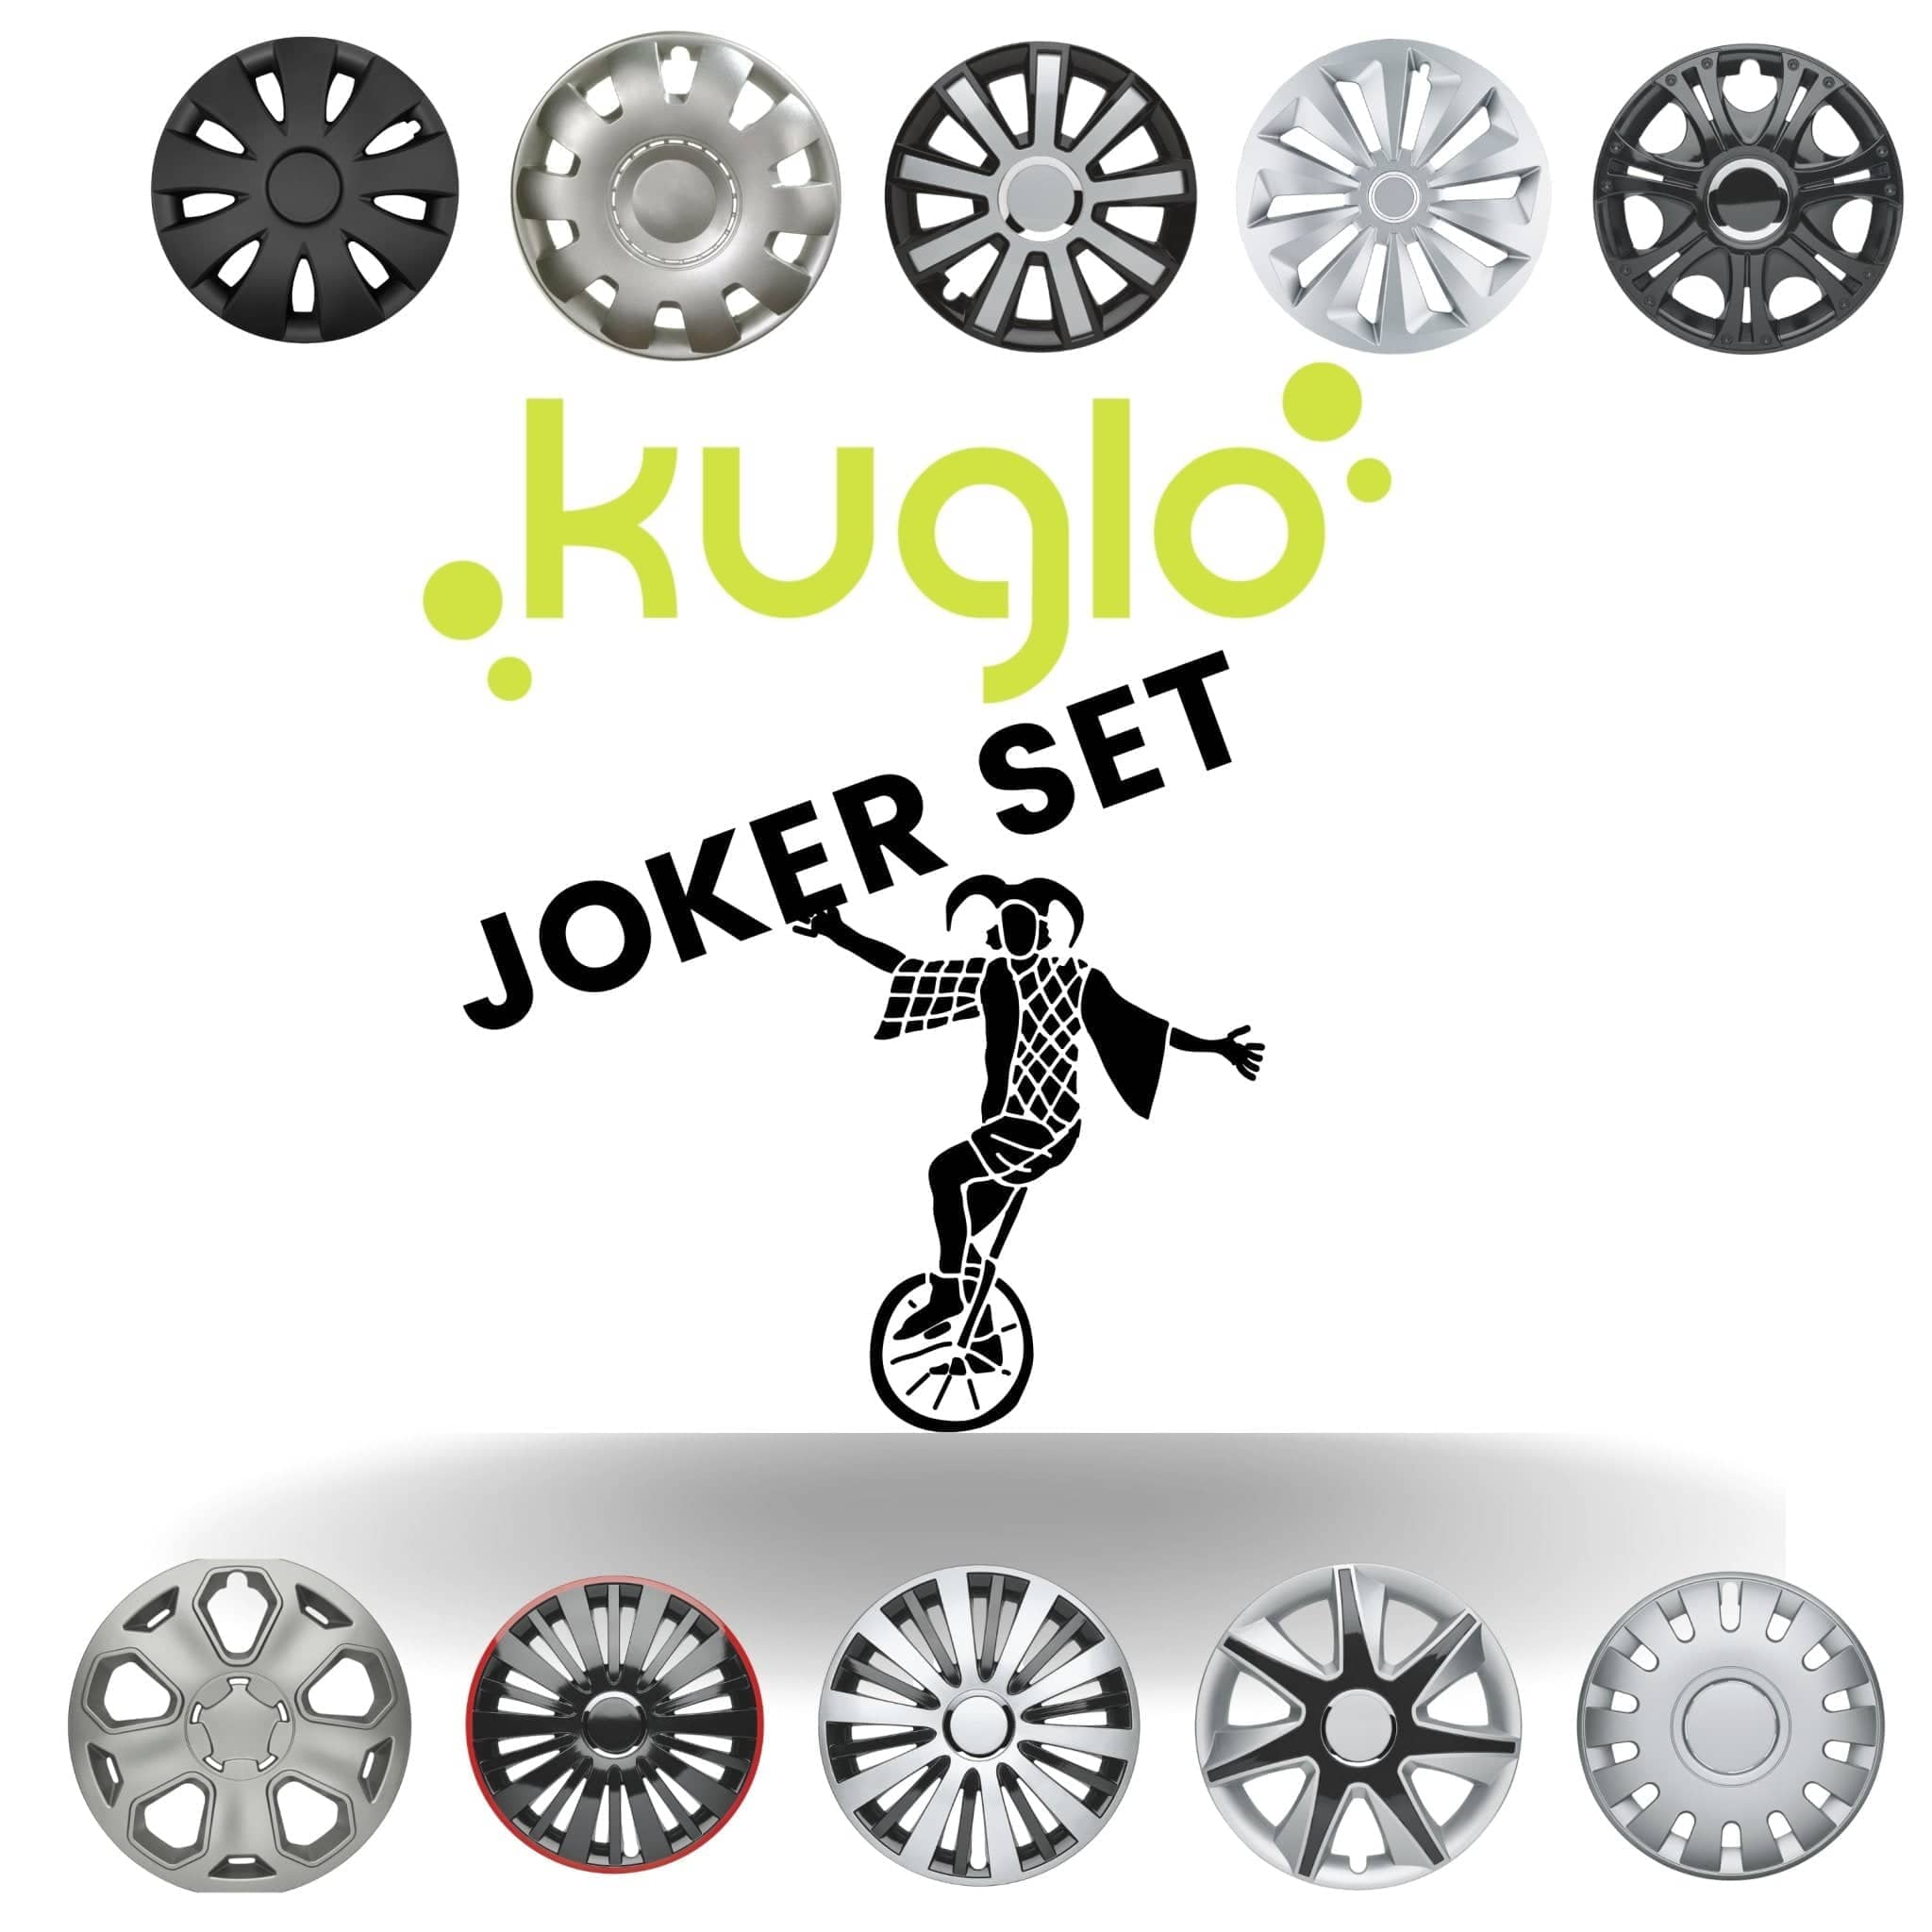 Radkappen silber-schwarz Joker Set - Überraschung im Karton 4 Stück Radzierblenden für Stahlfelgen 13-16 Zoll